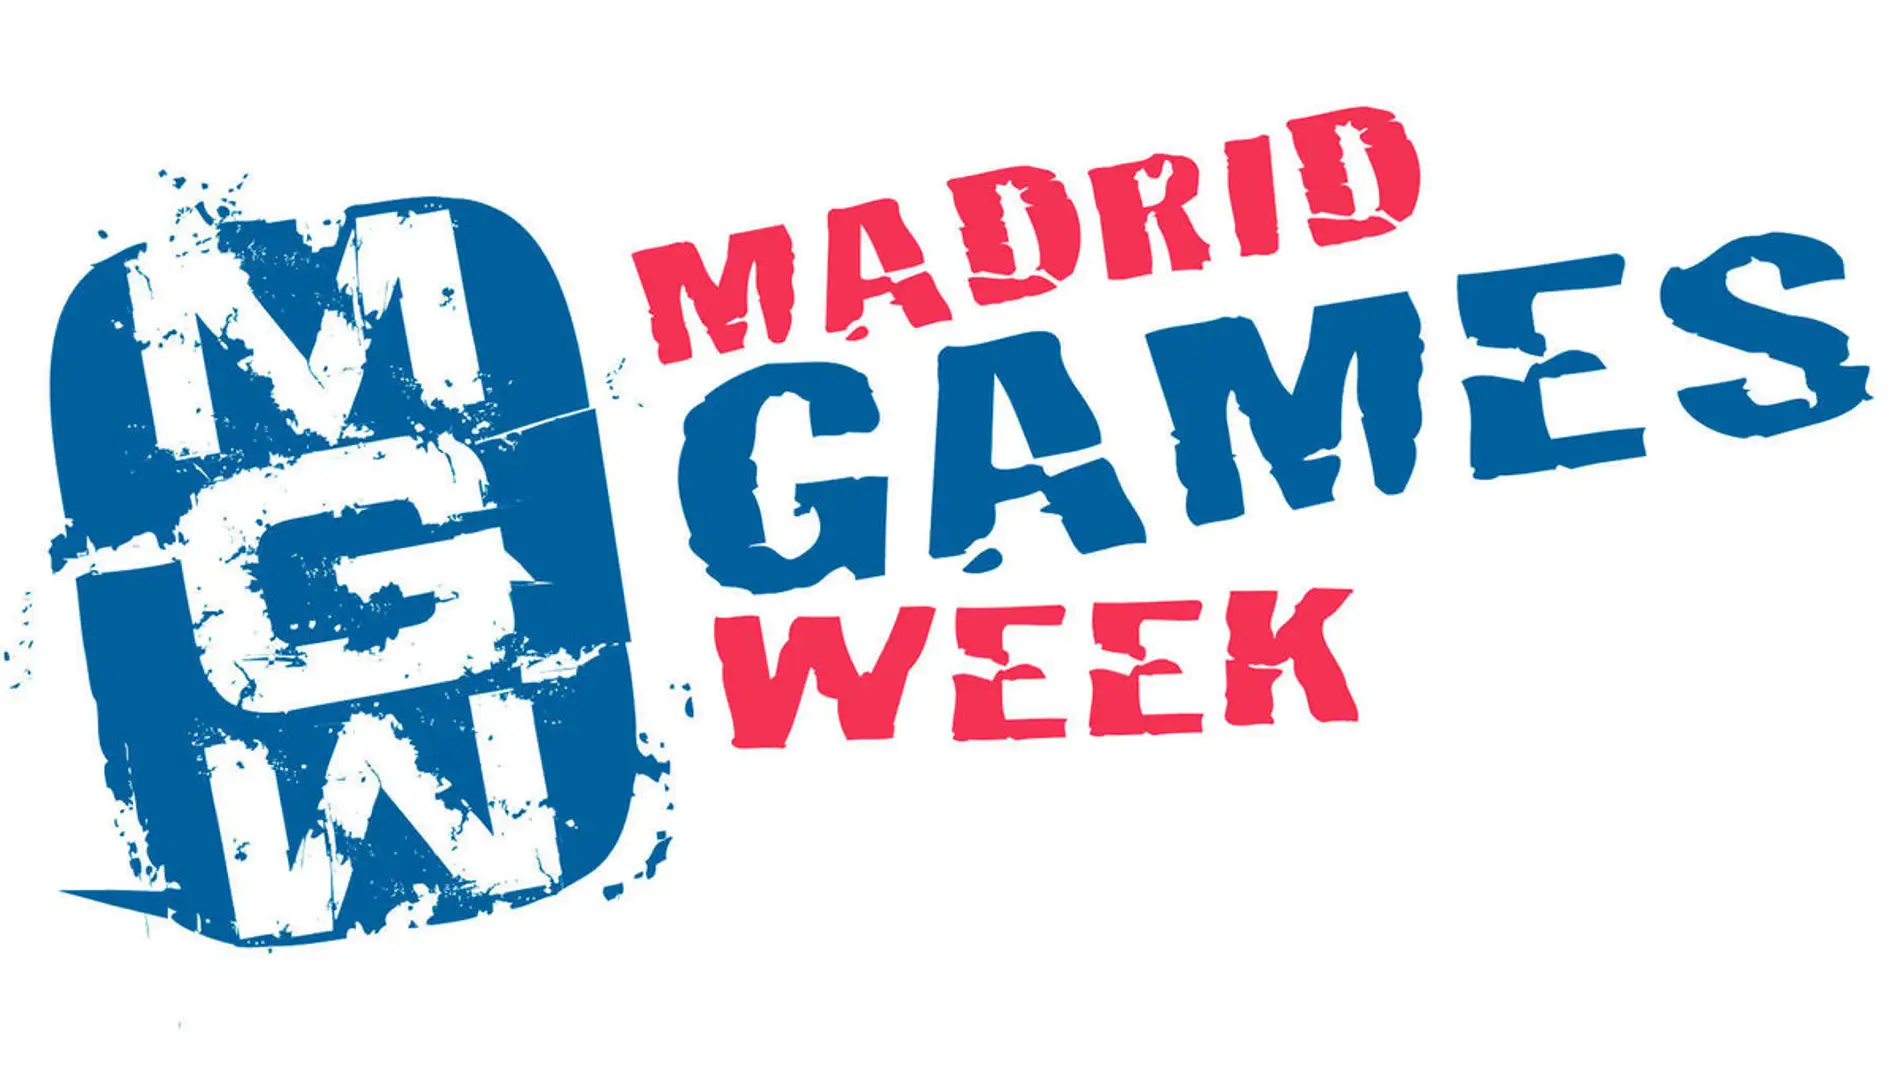 Madrid Games Week